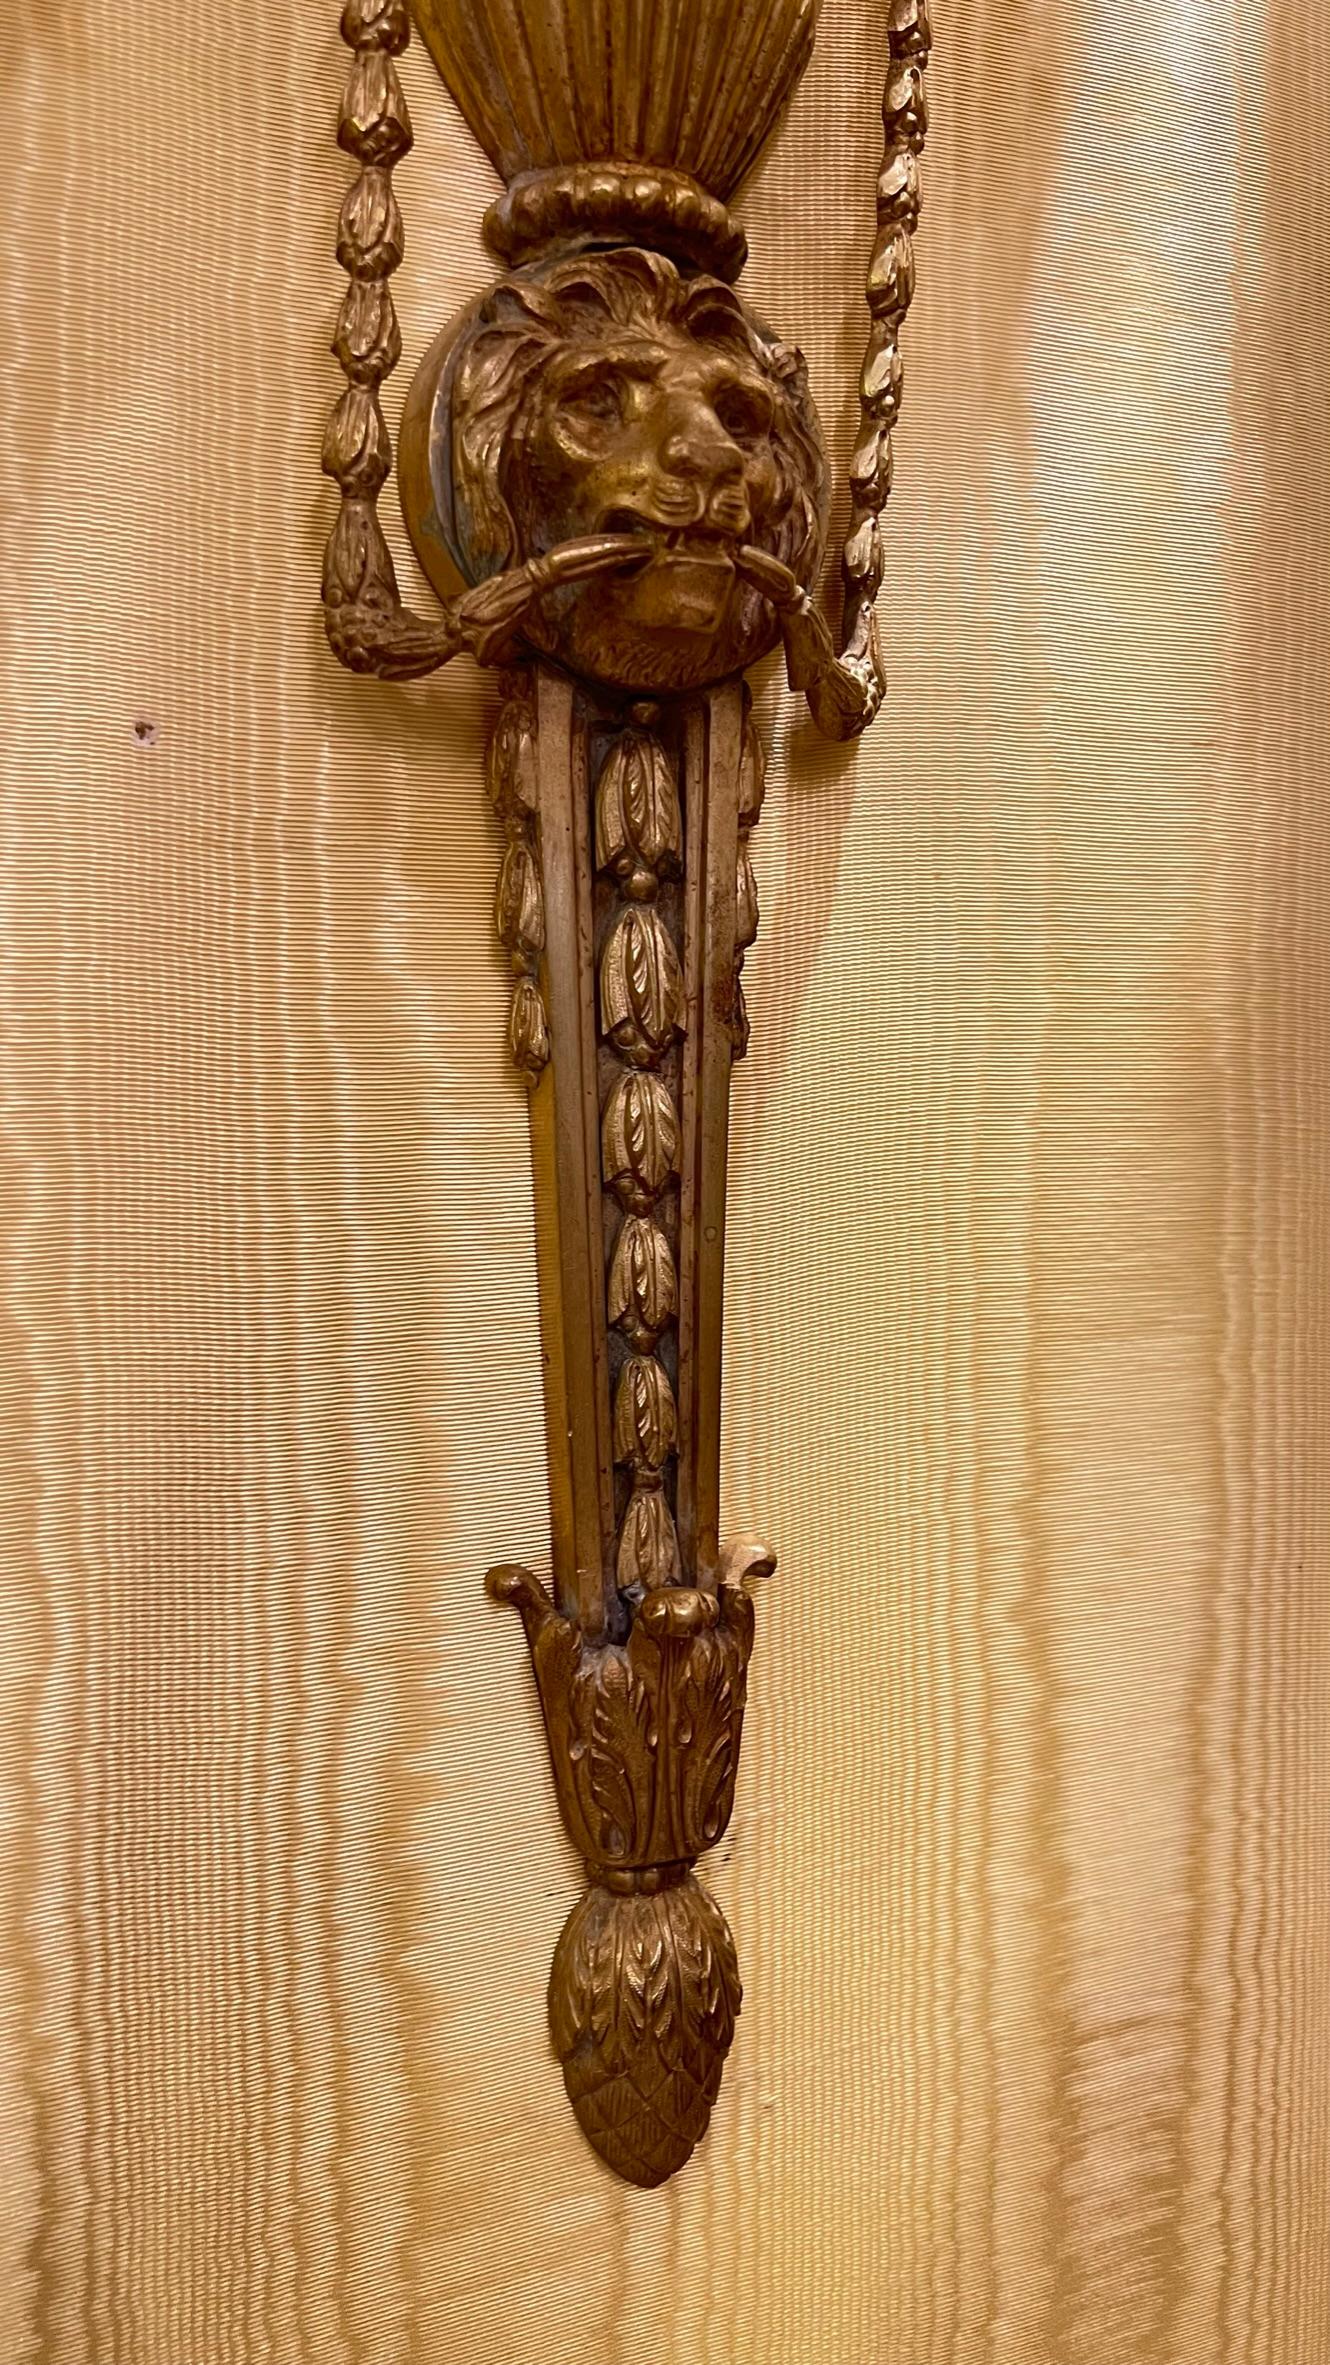 Paire de lampes de poche françaises du 19e siècle  Appliques en bronze doré avec des motifs néoclassiques comprenant une urne, des clochettes, des masques de chèvre et de lion, et trois bras de bougie.  S'accorde particulièrement bien avec un décor